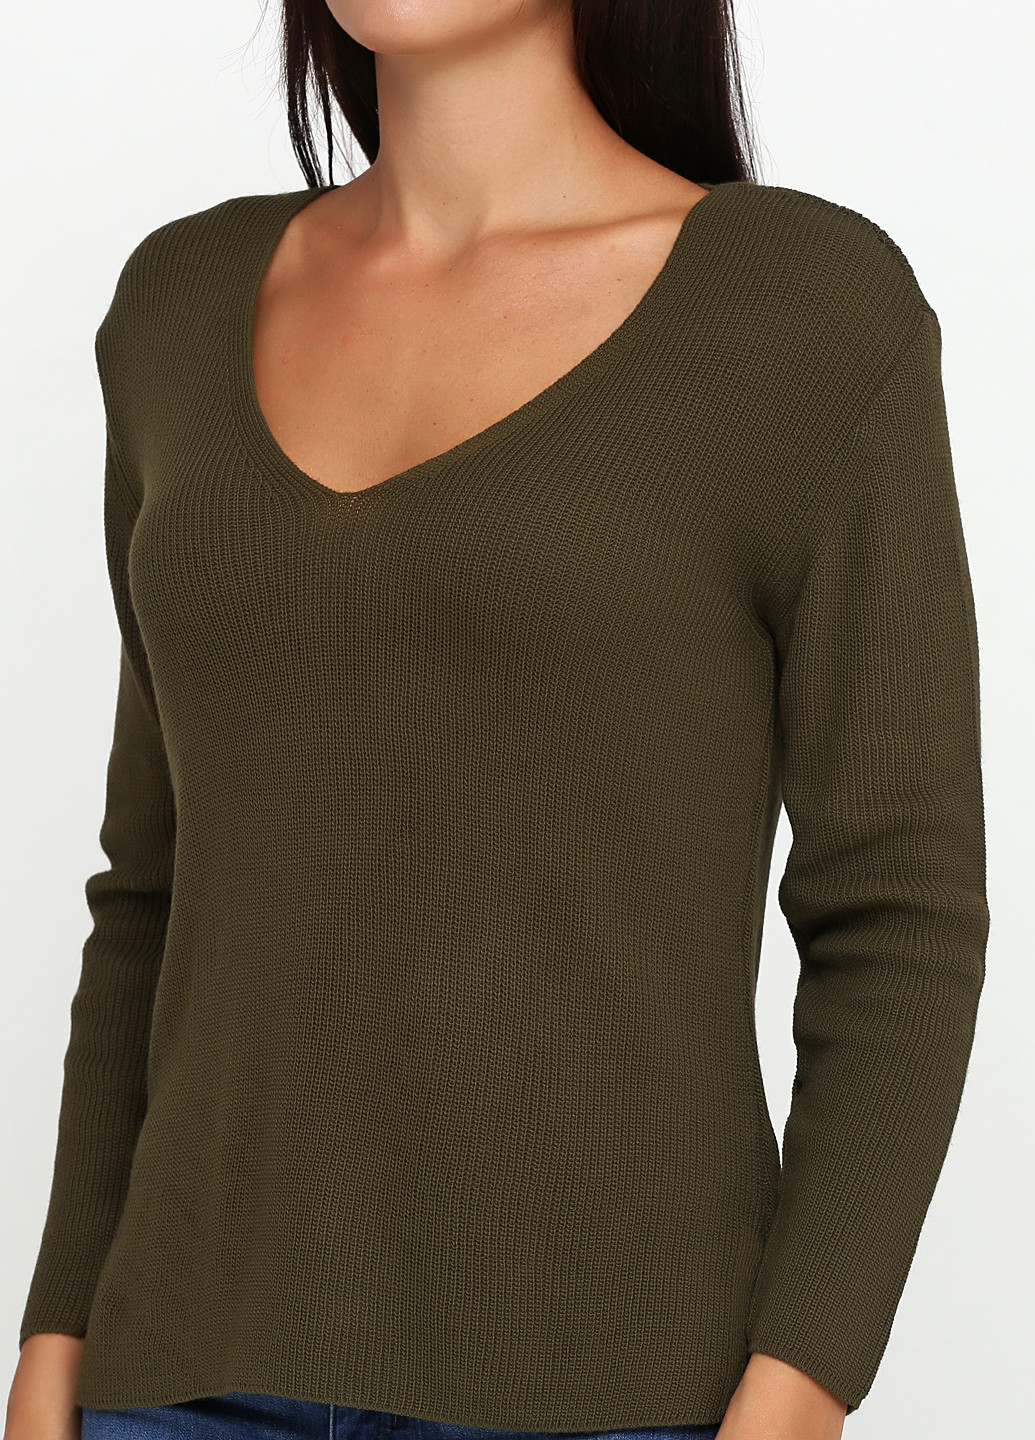 Оливково-зеленый демисезонный пуловер пуловер Imperial